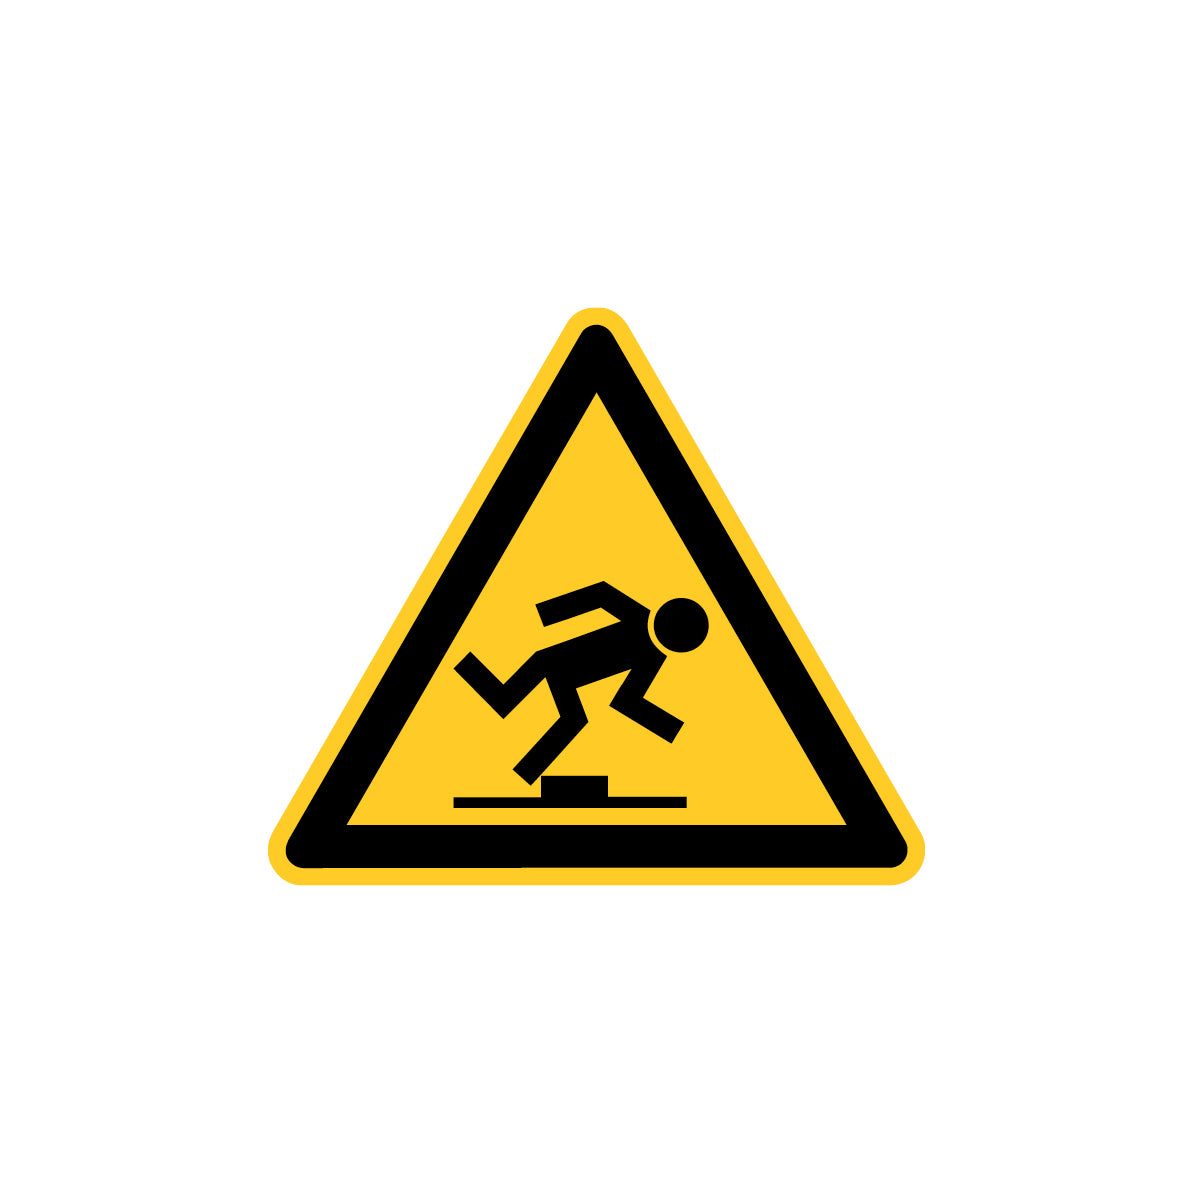 6.W-927 Warnung vor Stolpergefahr, Warnzeichen, Praxisbewährt